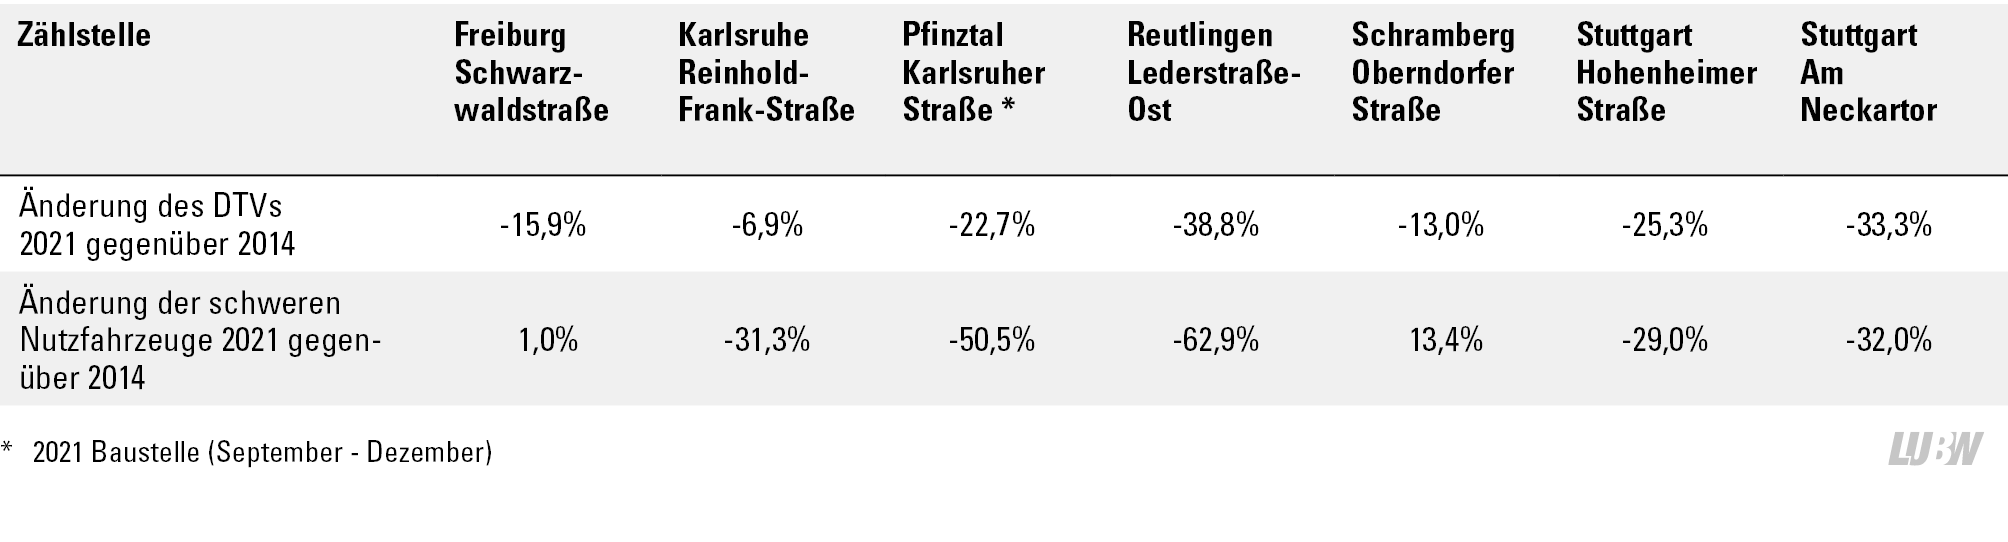 Tabellarische Darstellung der prozentualen Veränderungen der Verkehrsstärken (DTV) und der schweren Nutzfahrzeuge 2021 gegenüber 2014 an den Verkehrszählstellen. Die Änderungen des DTVs 2021 gegenüber 2014 liegen zwischen -38,8 Prozent (Pfinztal Karlsruher Straße, Baustelleneinfluss von September 2021 bis Dezember 2021) bis -6,9 Prozent (Karlsruhe Reinhold-Frank-Straße). Die Änderungen der schweren Nutzfahrzeuge 2021 gegenüber 2014 zeigen eine Spannweite von –62,9 Prozent (Reutlingen Lederstraße-Ost) bis +13,4 Prozent (Schramberg Oberndorfer Straße).